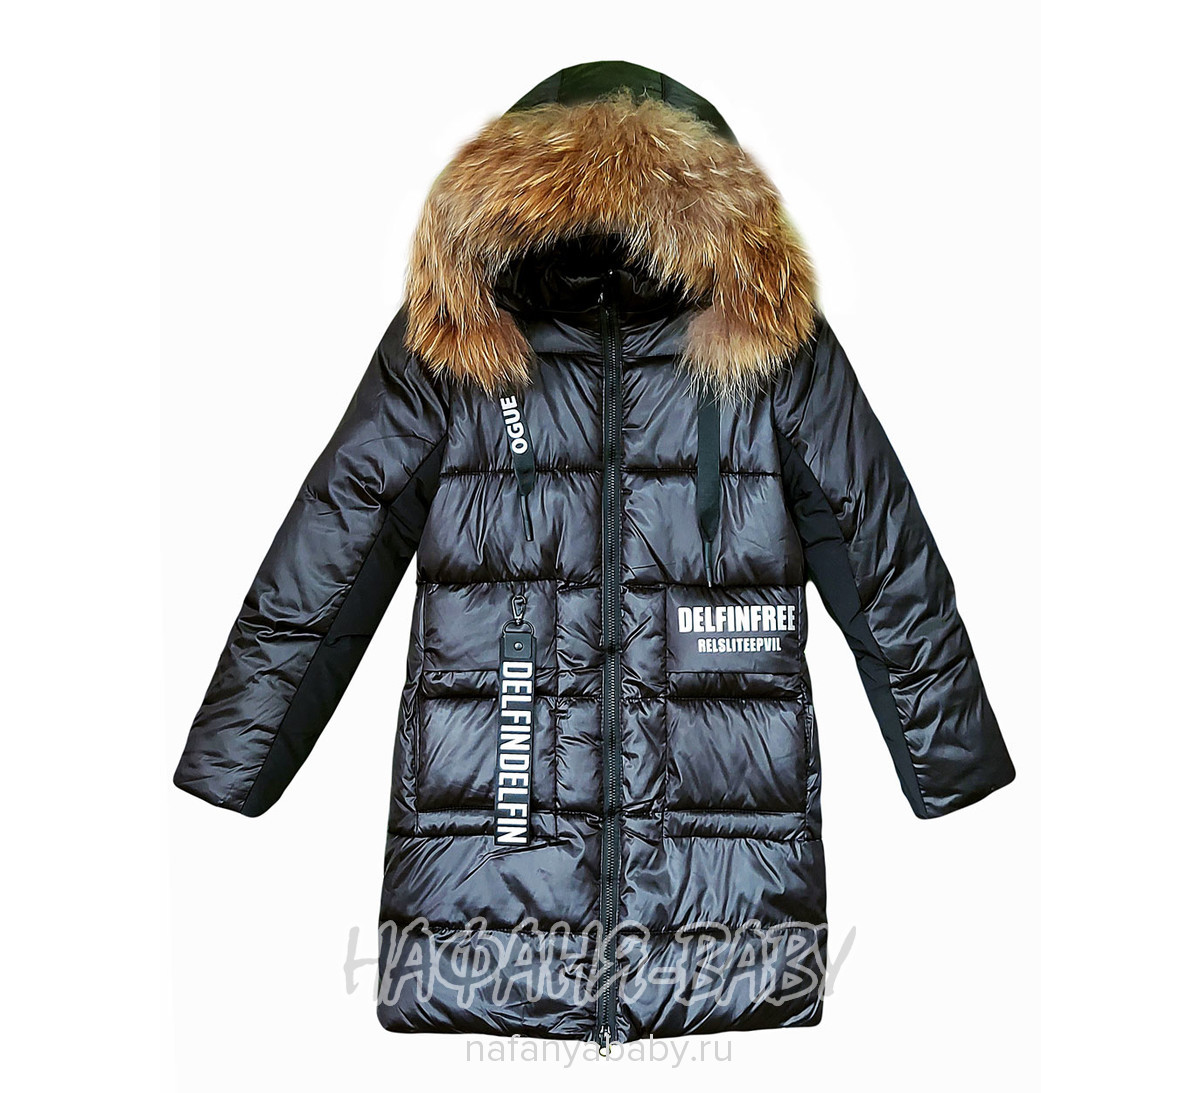 Зимнее пальто DELFIN-FREE арт: 2209, 5-9 лет, 10-15 лет, цвет черный, оптом Китай (Пекин)